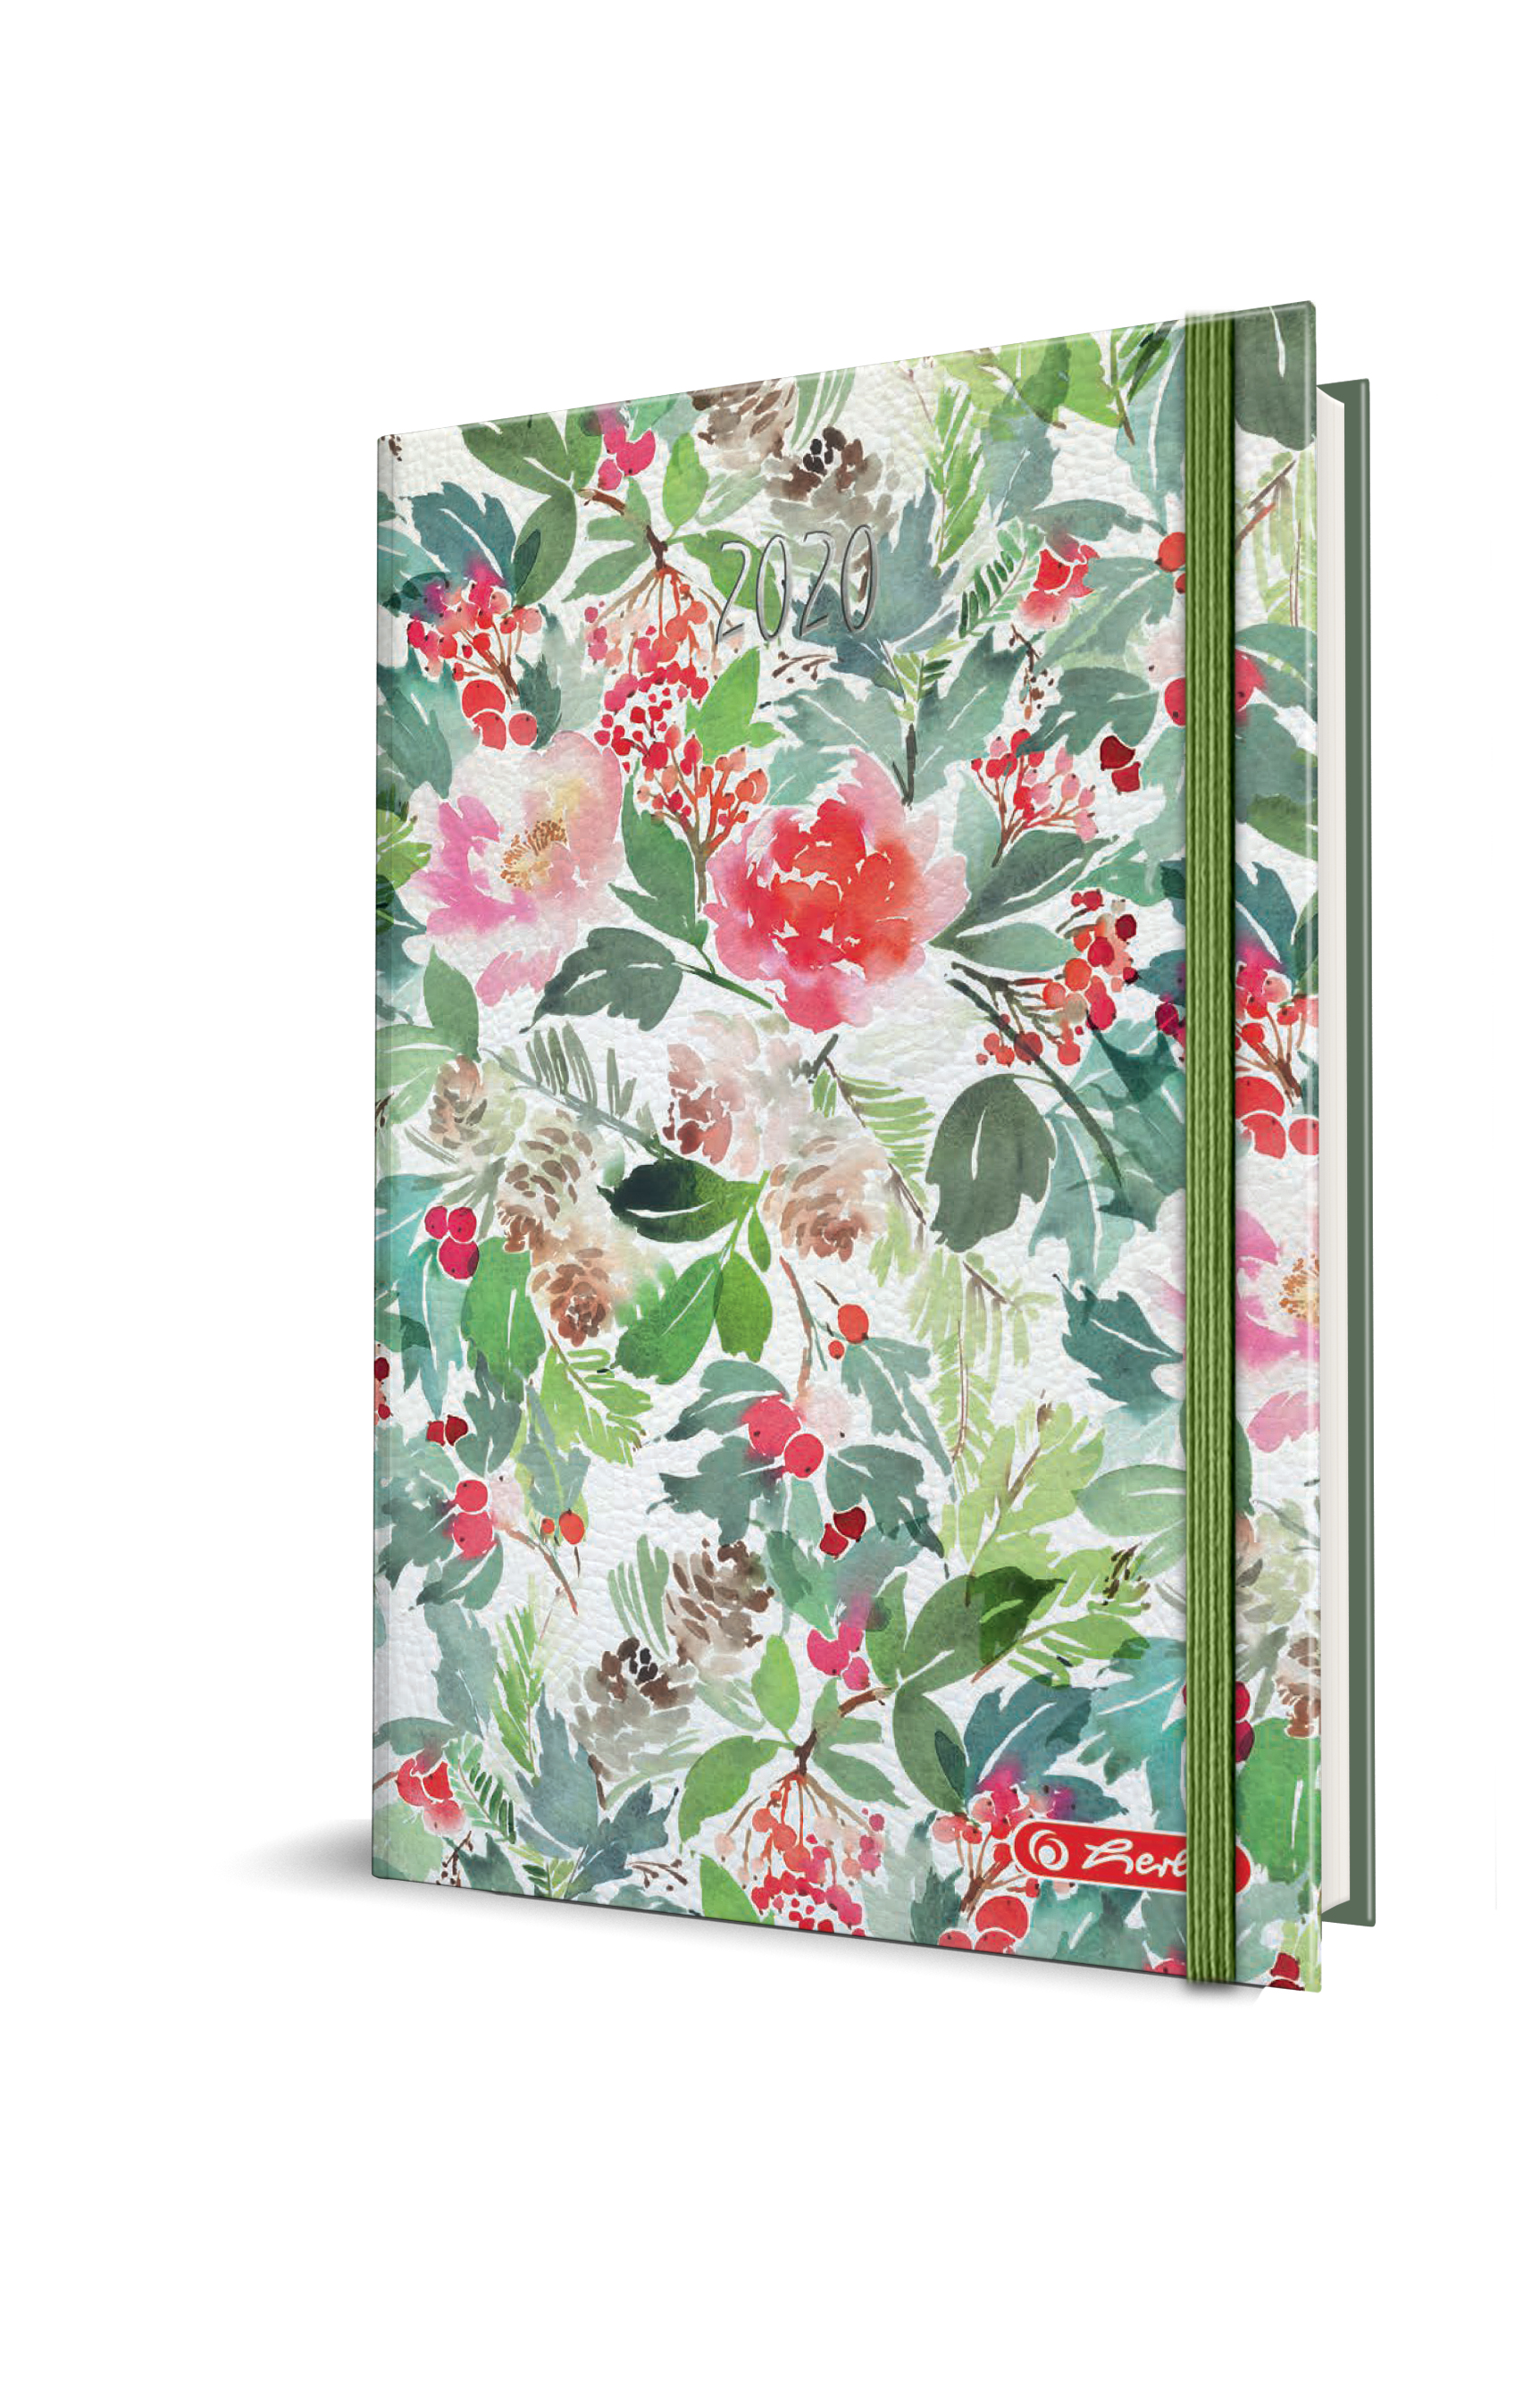 Agenda Datata Watercolor Ro A5, 352 Pagini + 16 Pagini Zentangle, Coperta Flexibila, Motiv Flowers, 2020